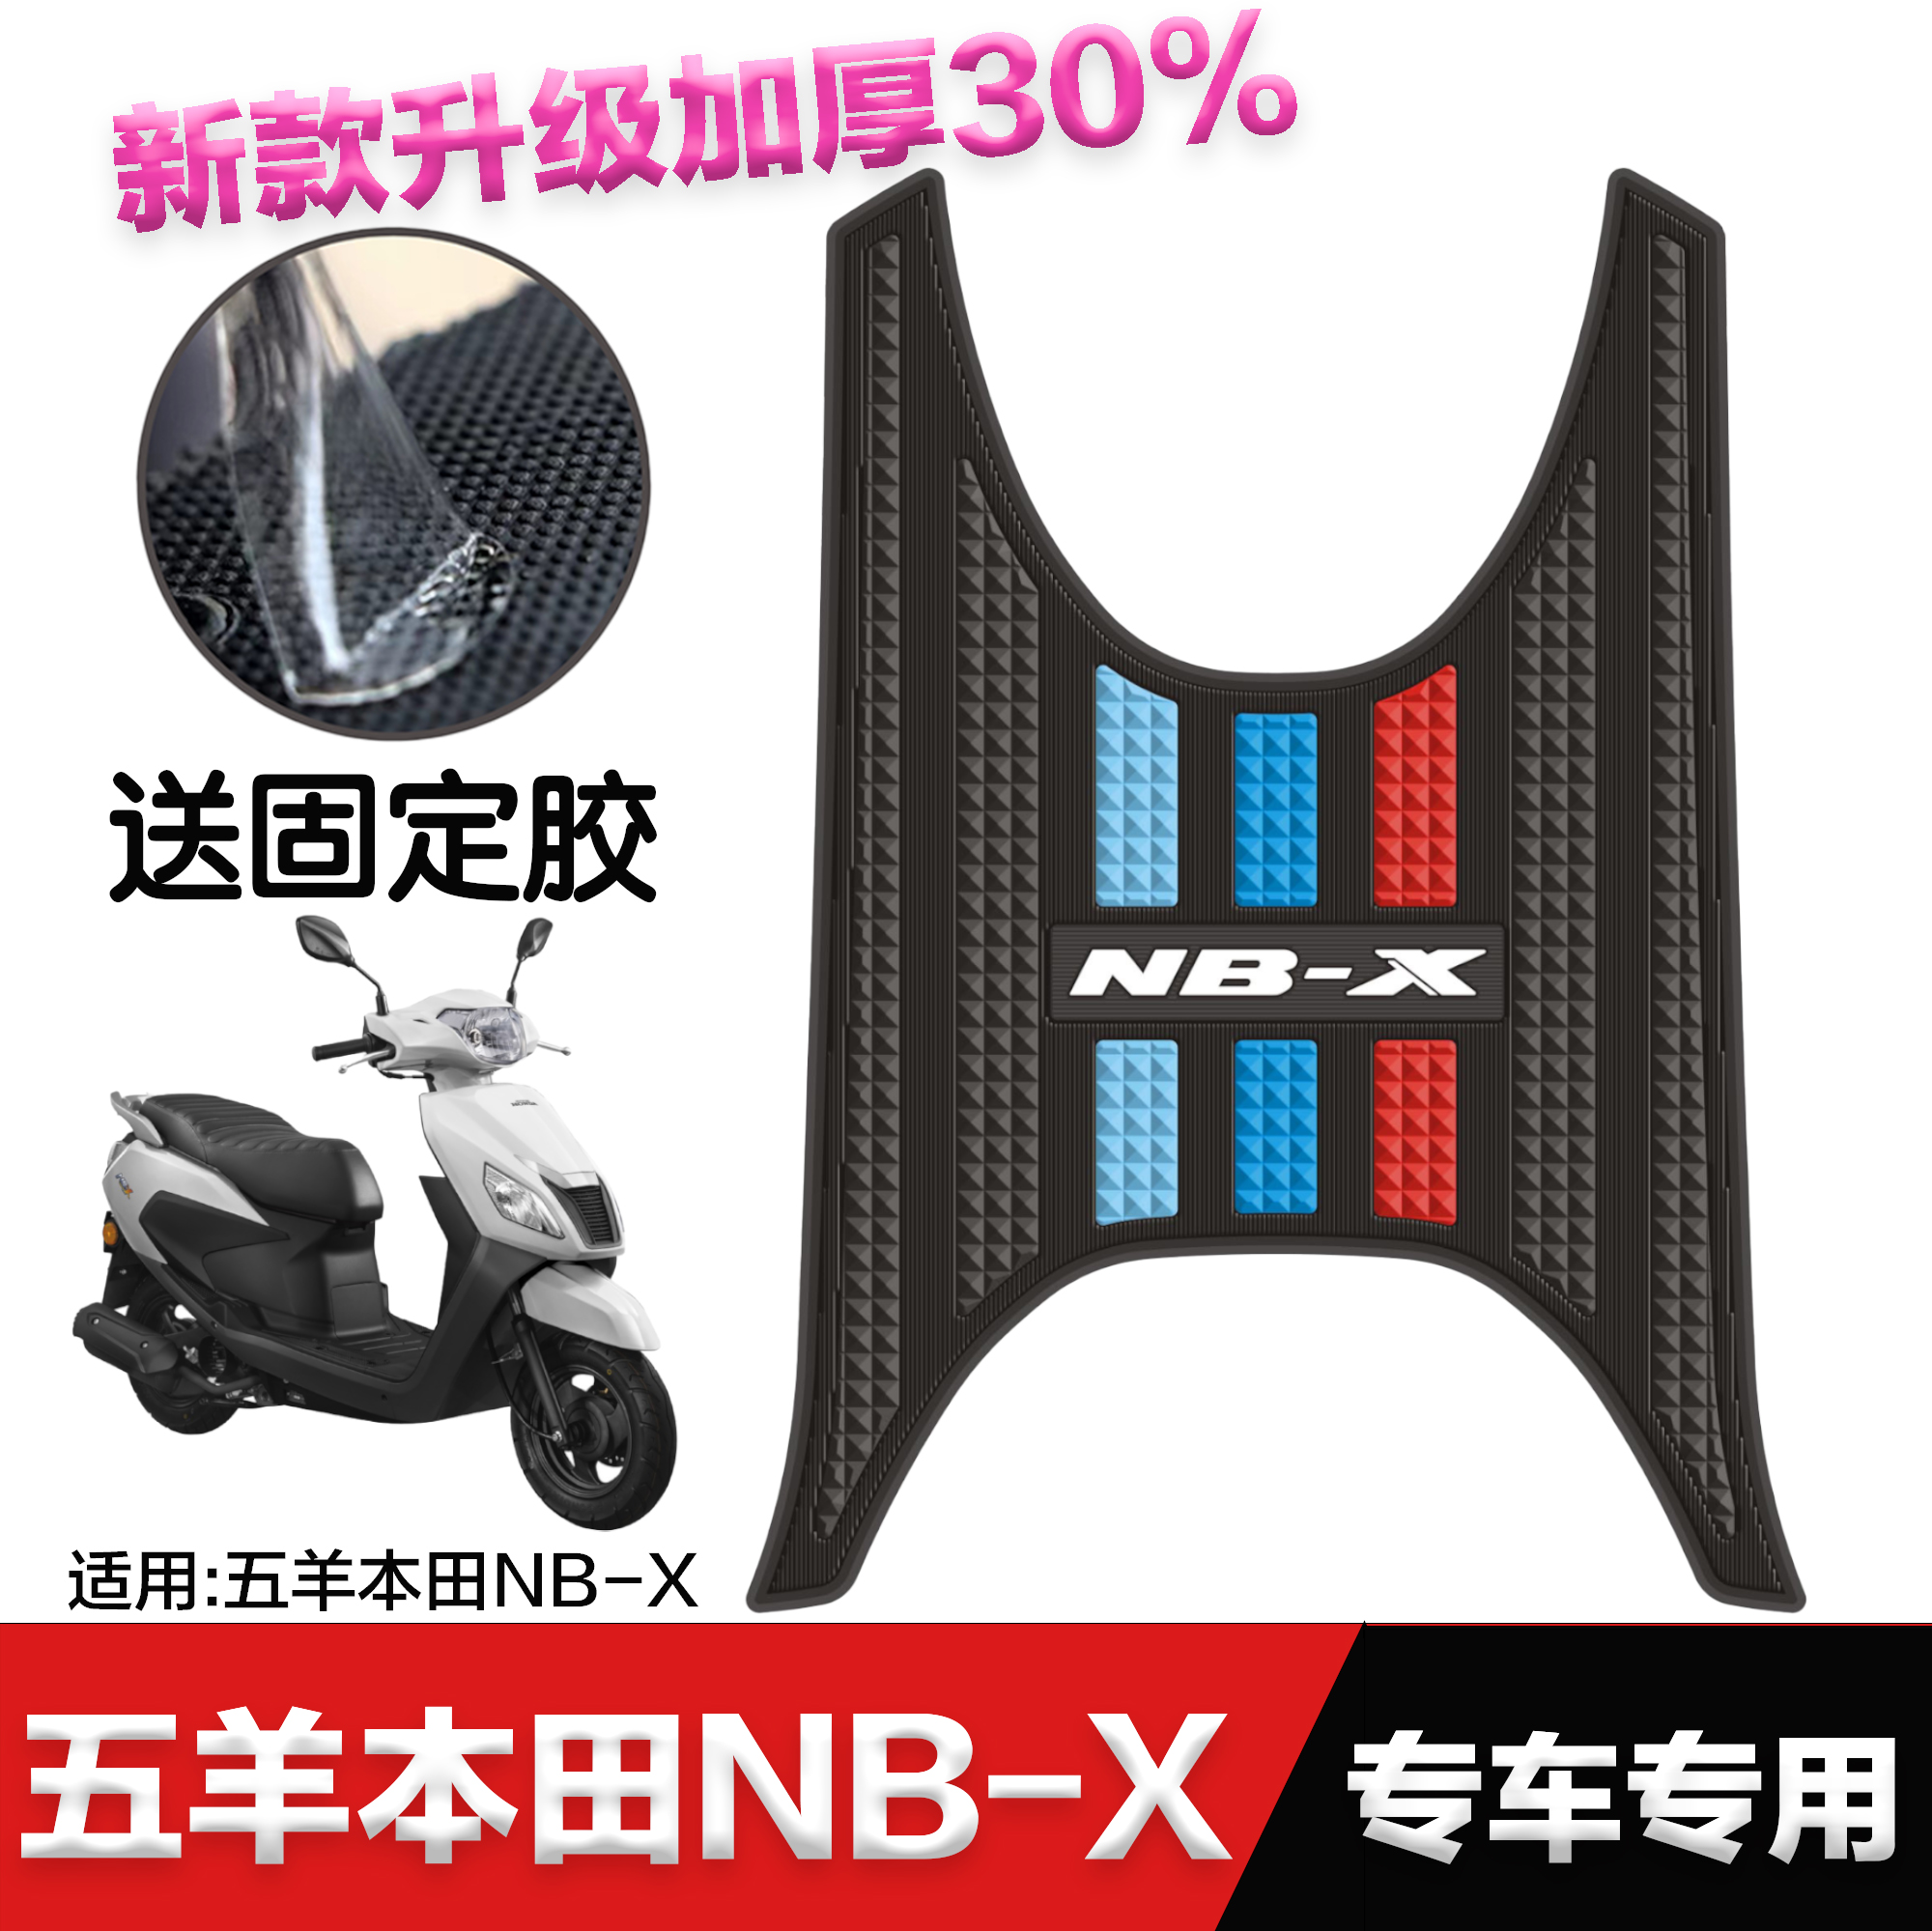 适用本田摩托车NBX125脚垫 改装配件专用脚踏垫 本田NB-X125脚垫